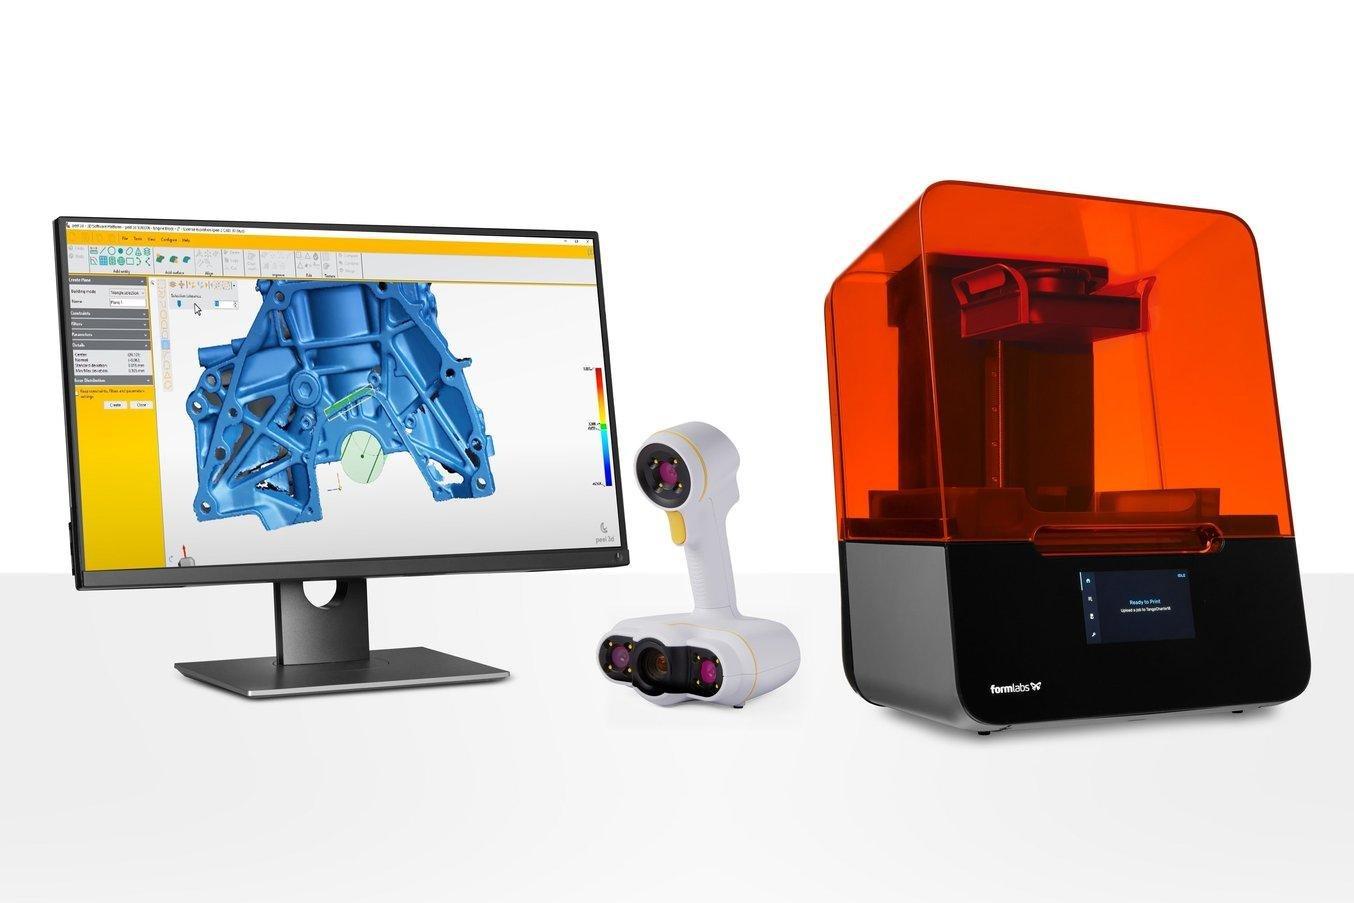 Le stampanti 3D SLA desktop sono ideali per trasformare i design sottoposti a ingegneria inversa in parti fisiche.